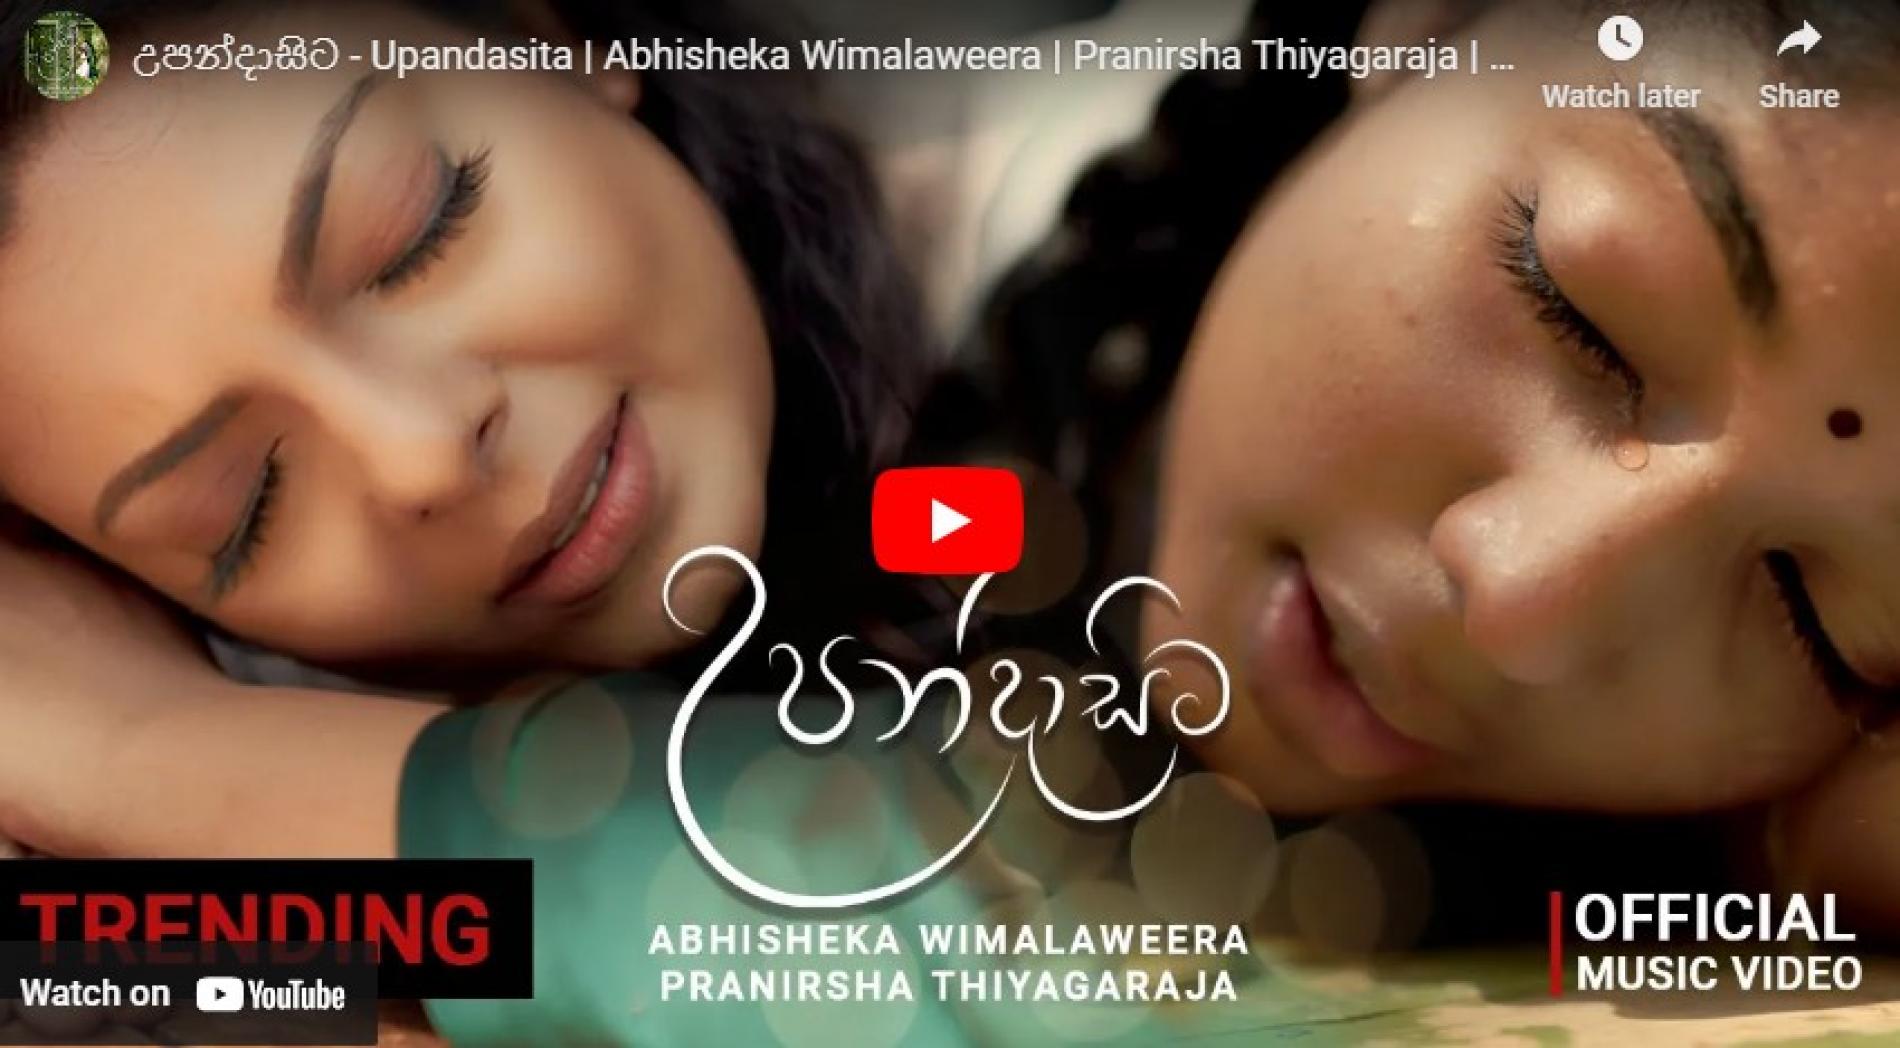 New Music : උපන්දාසිට – Upandasita | Abhisheka Wimalaweera | Pranirsha Thiyagaraja | Official Music Video